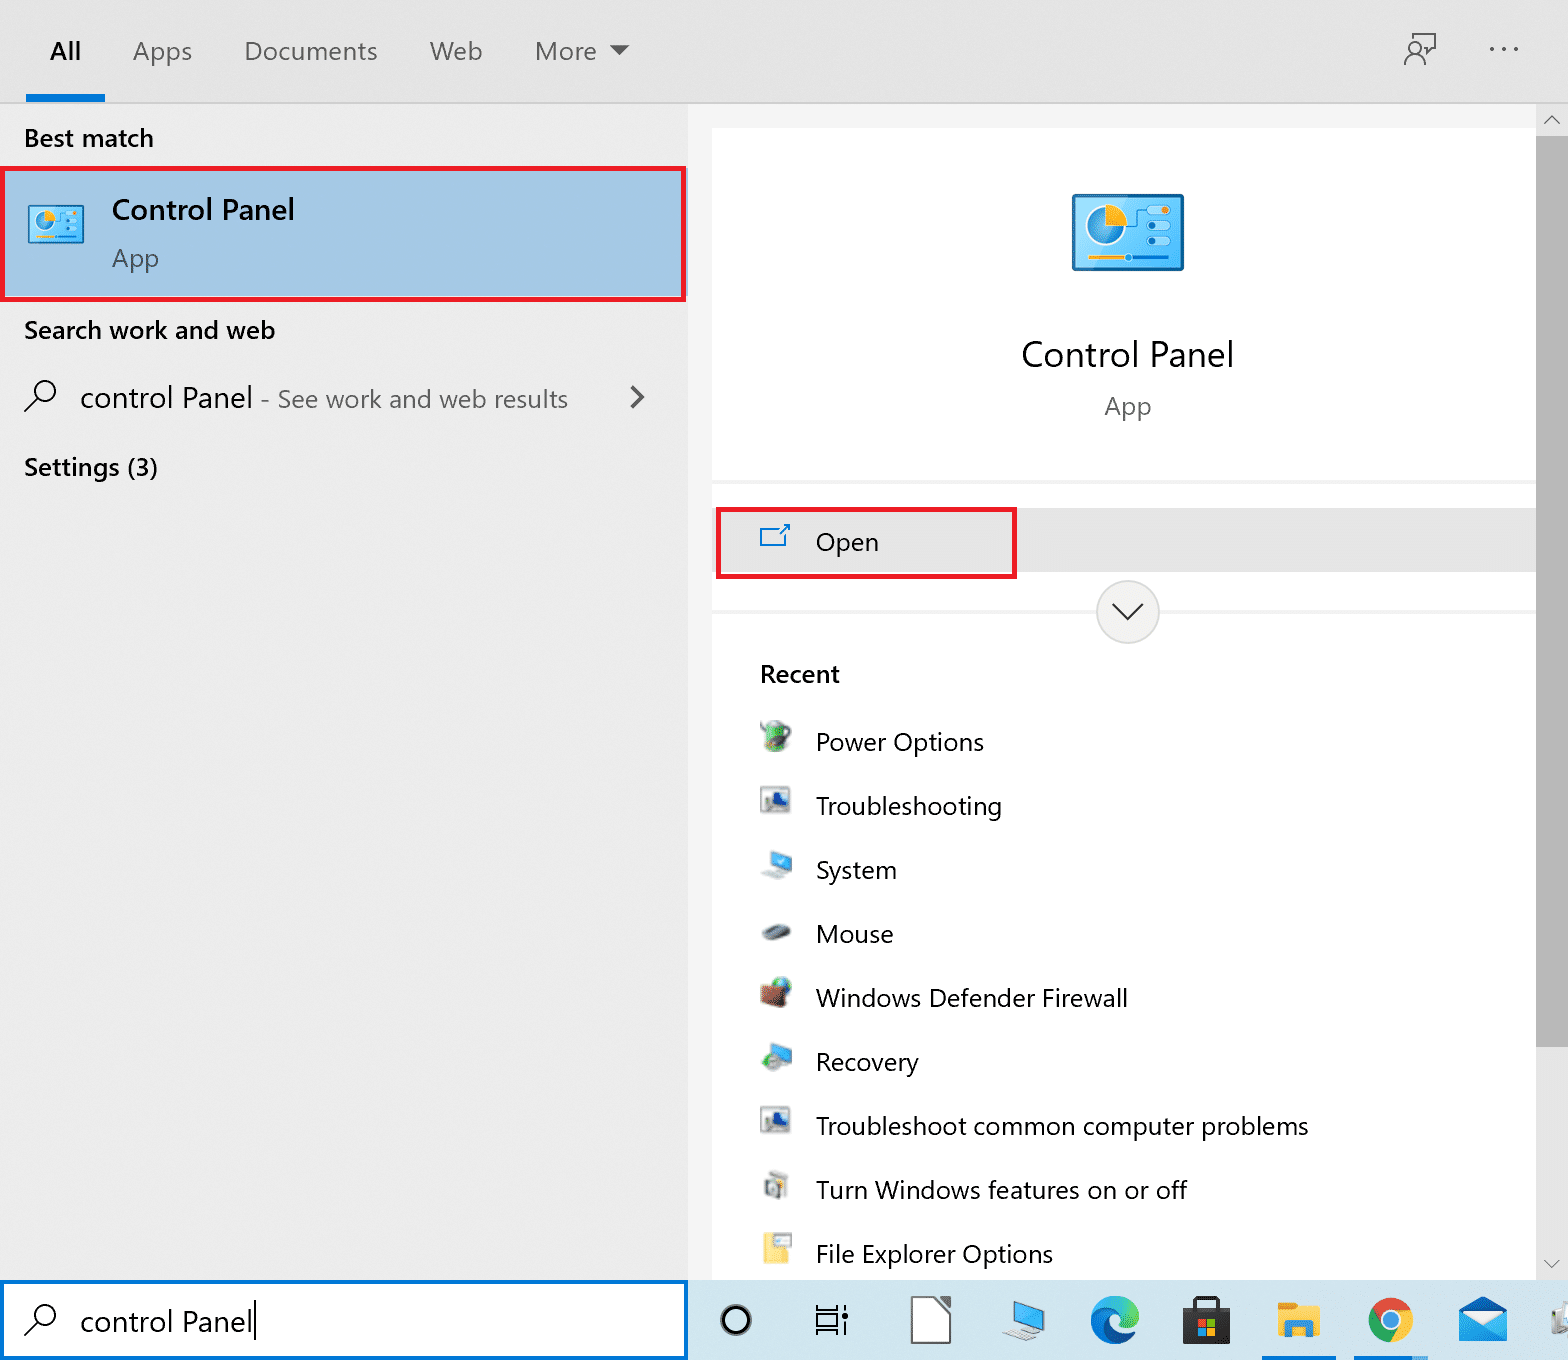 Ntaus Control Vaj Huam Sib Luag hauv Windows search bar